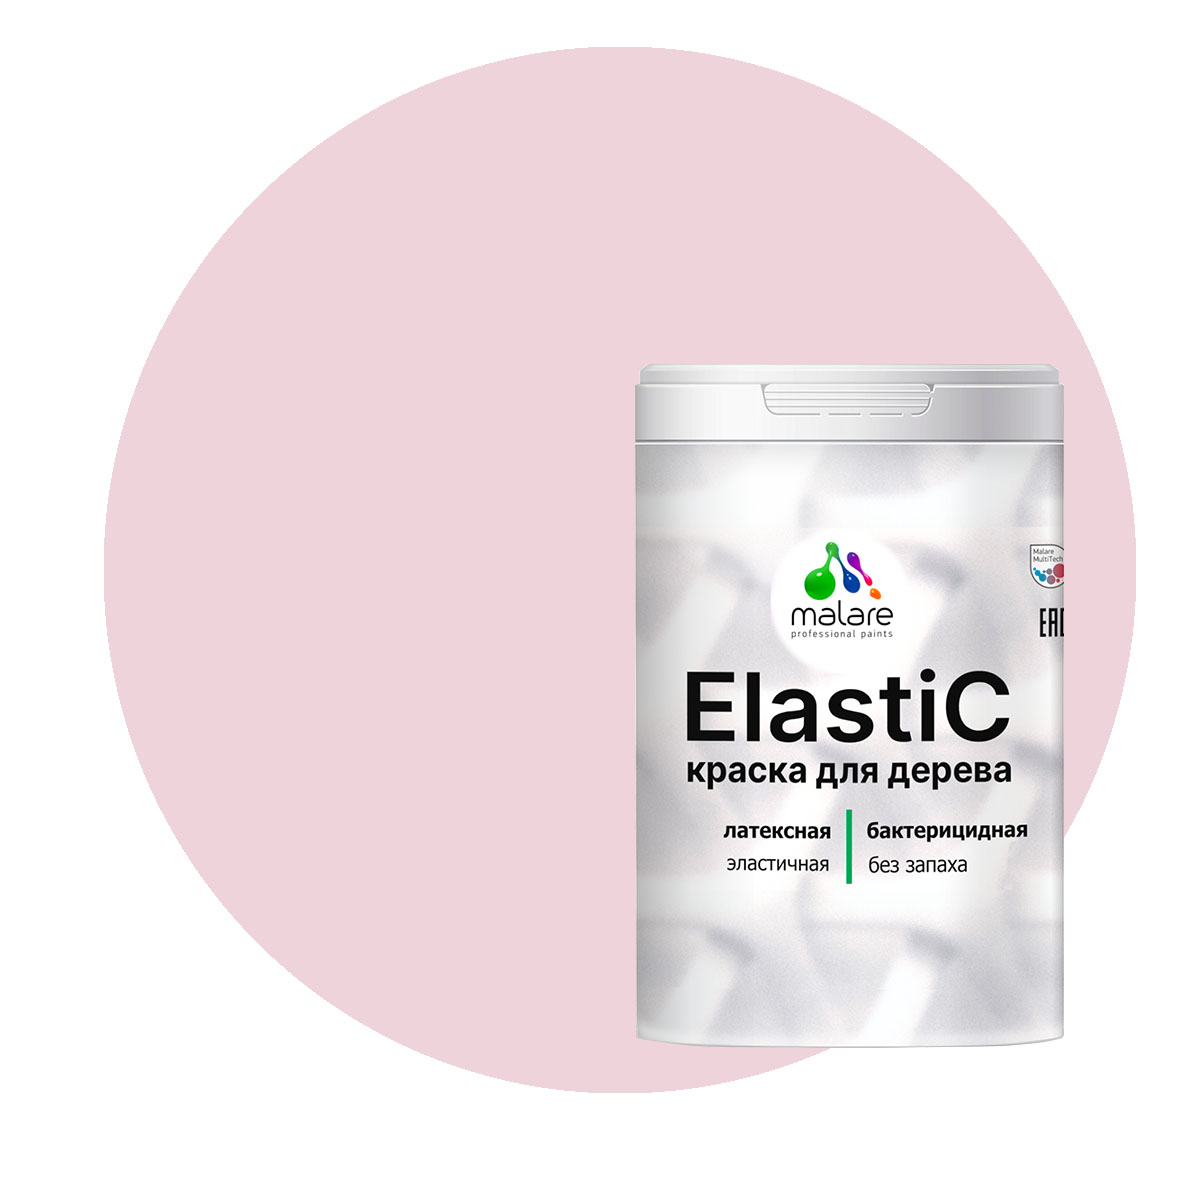 Краска Malare Elastic для деревянных поверхностей, бледно-розовый, 1 кг.